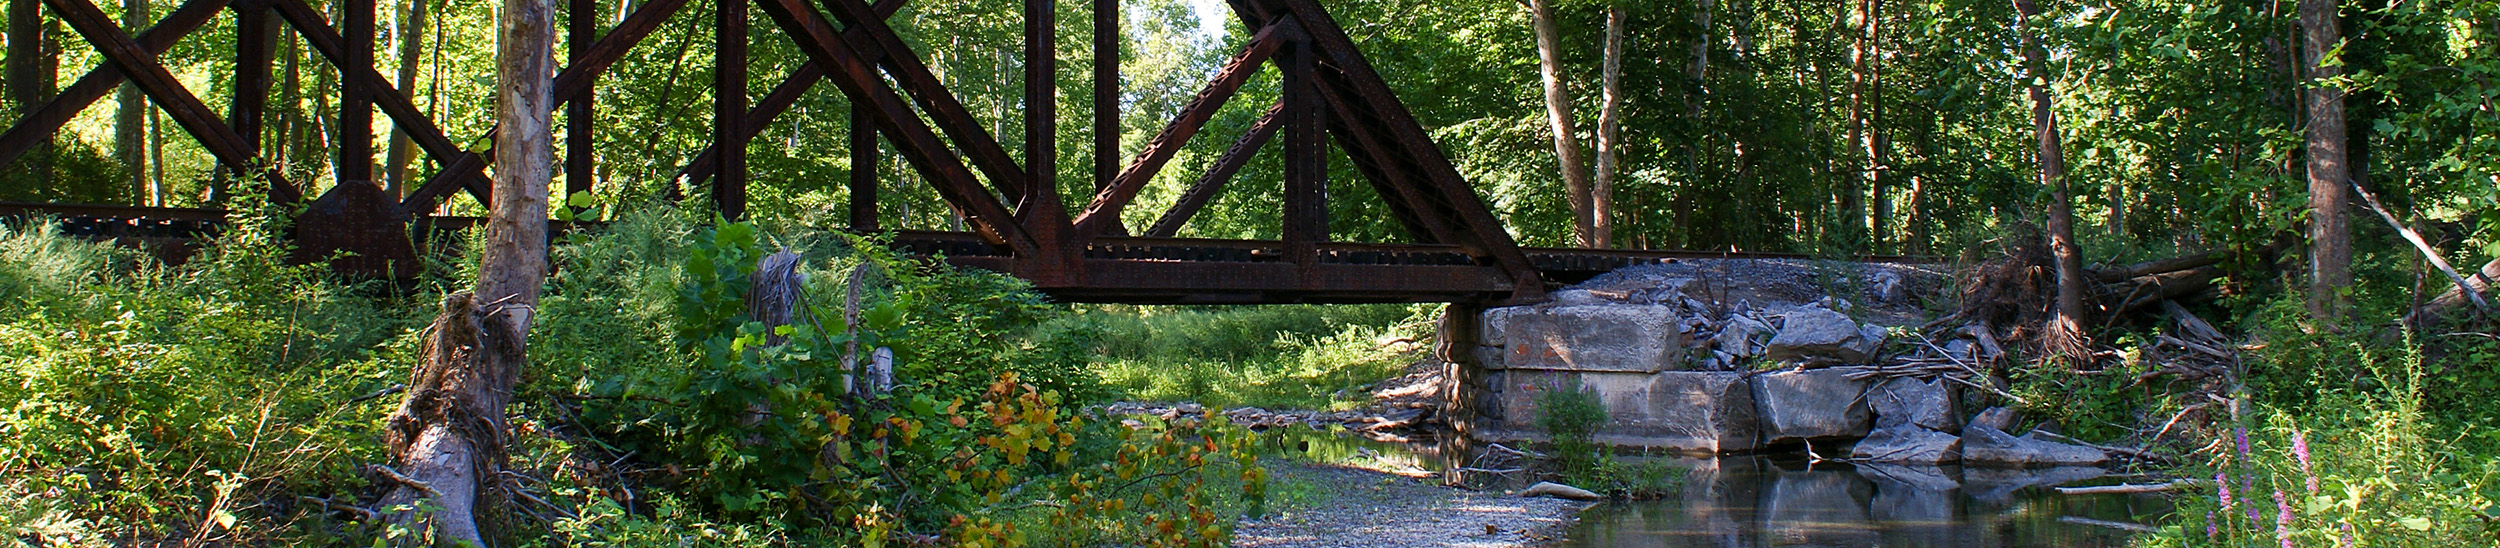 norfolk southern railroad bridge